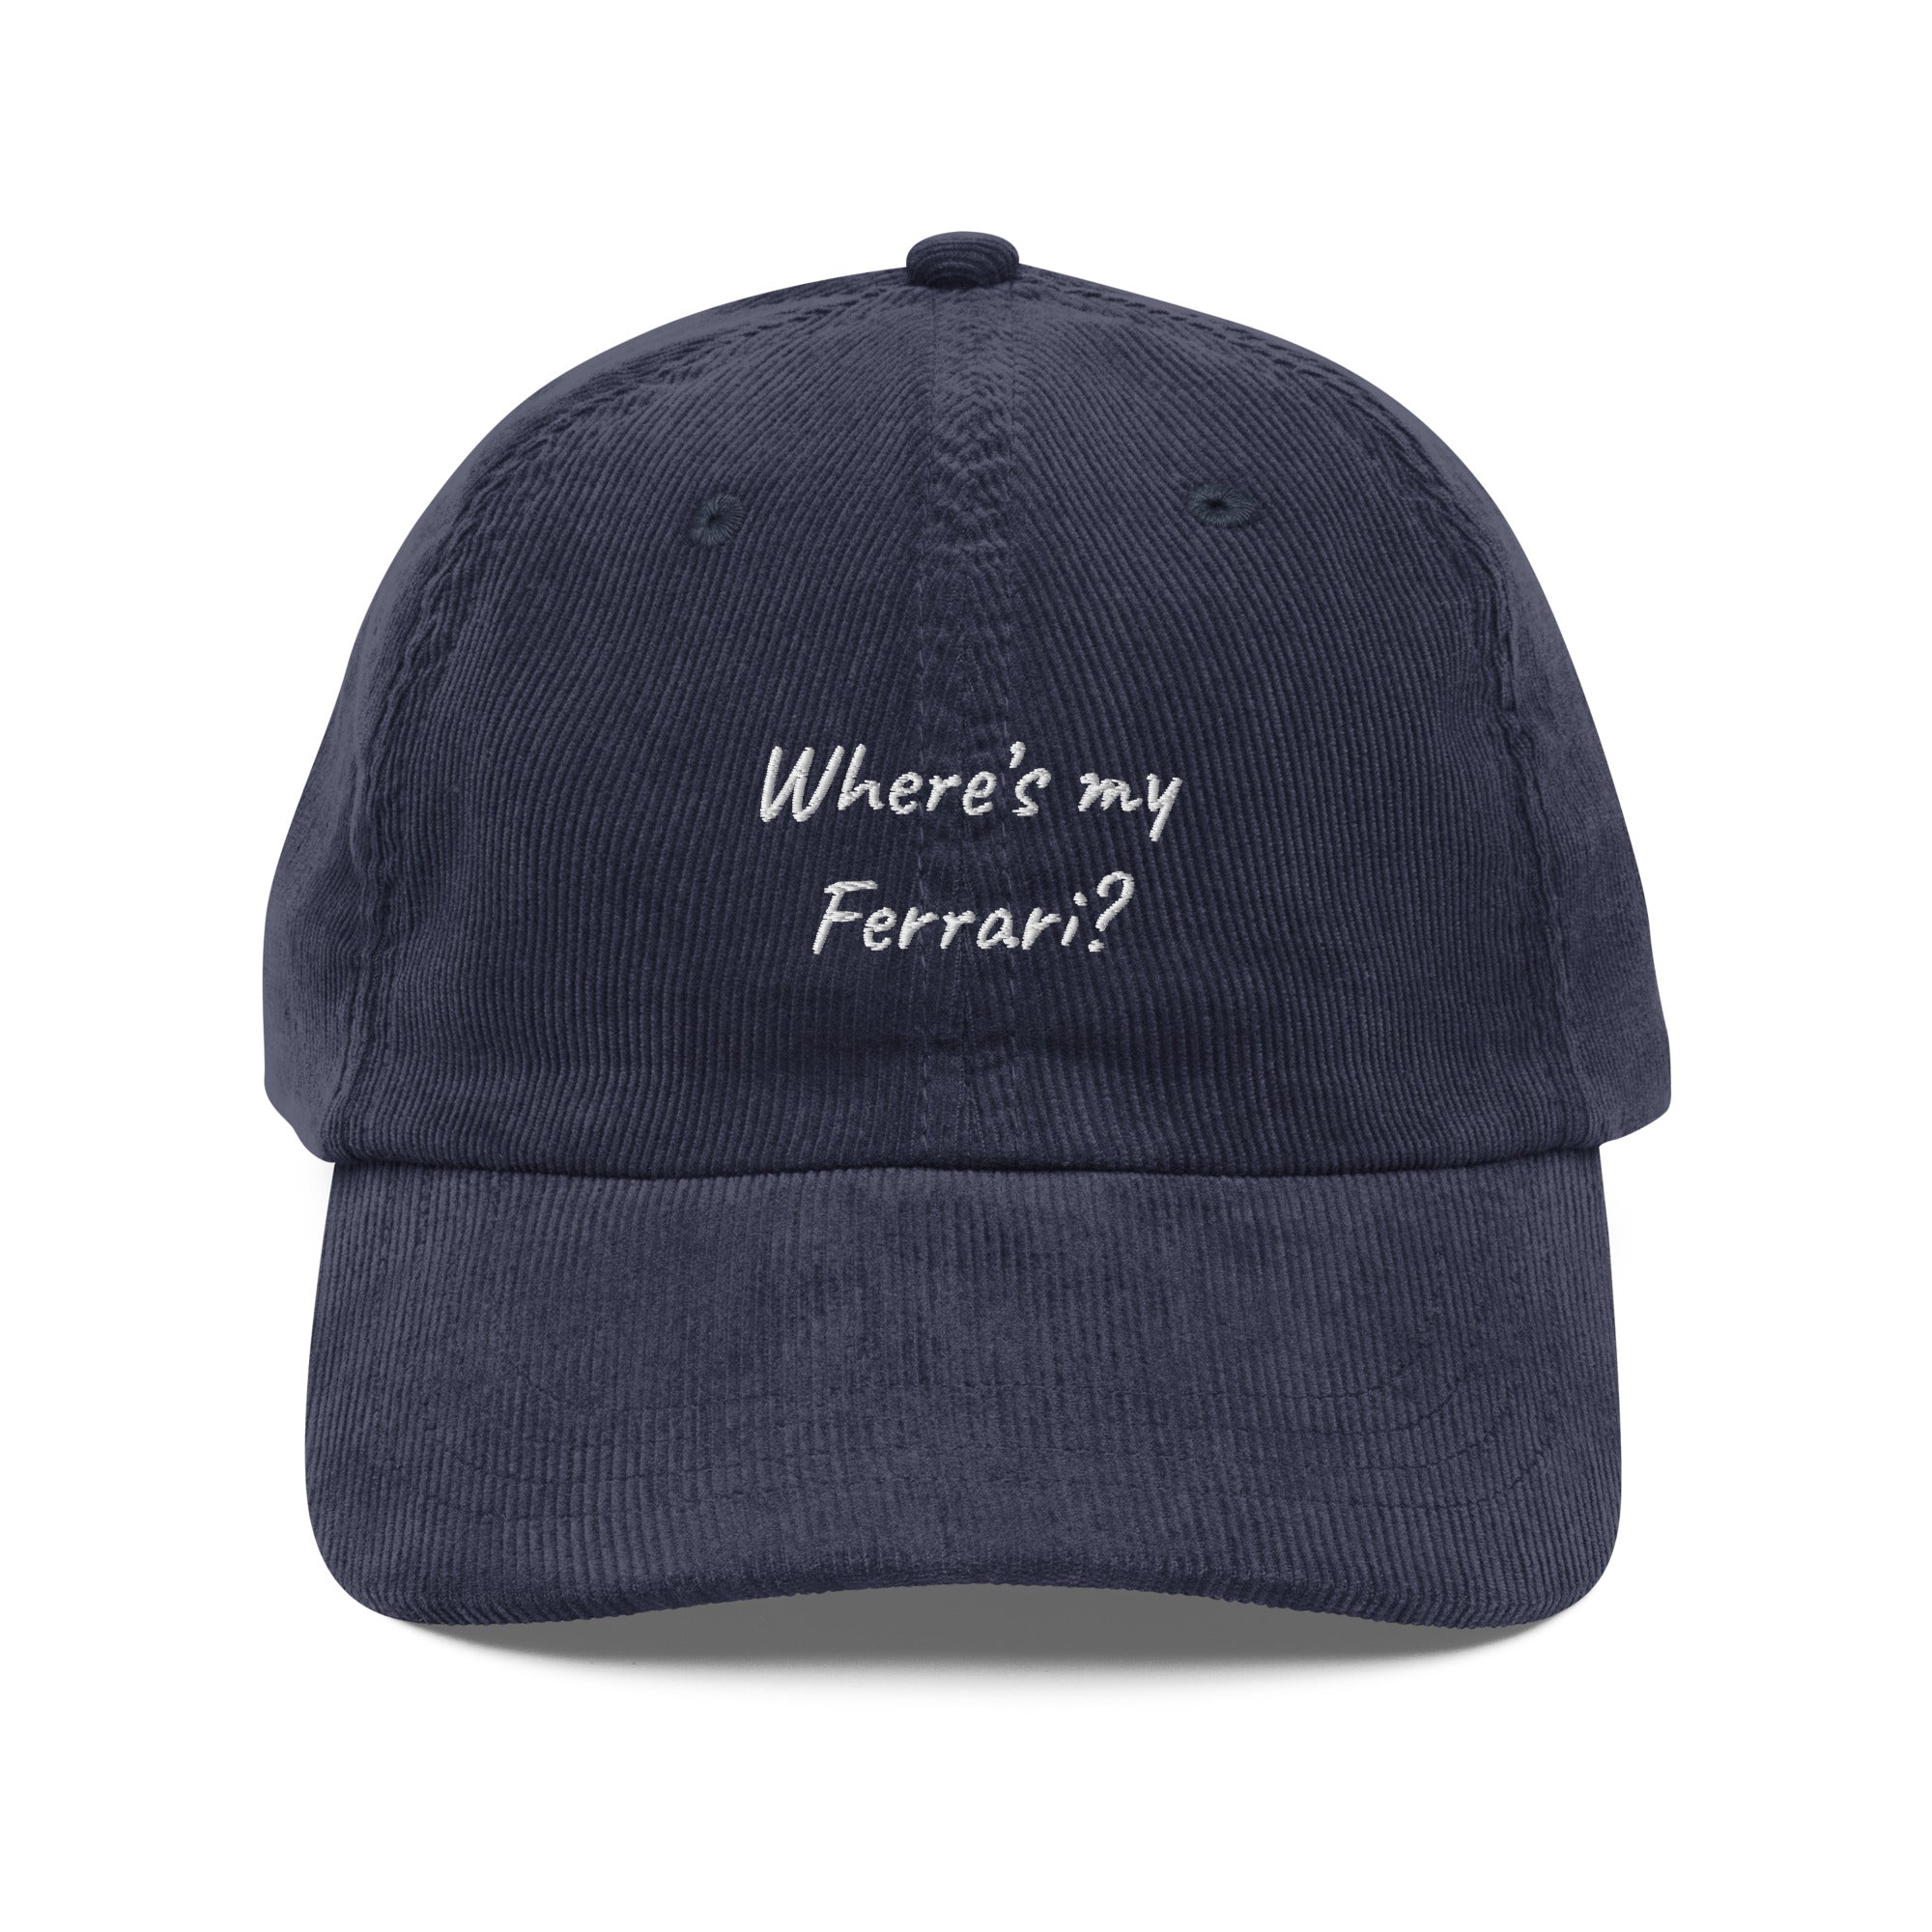 Where's my ferrari - corduroy cap